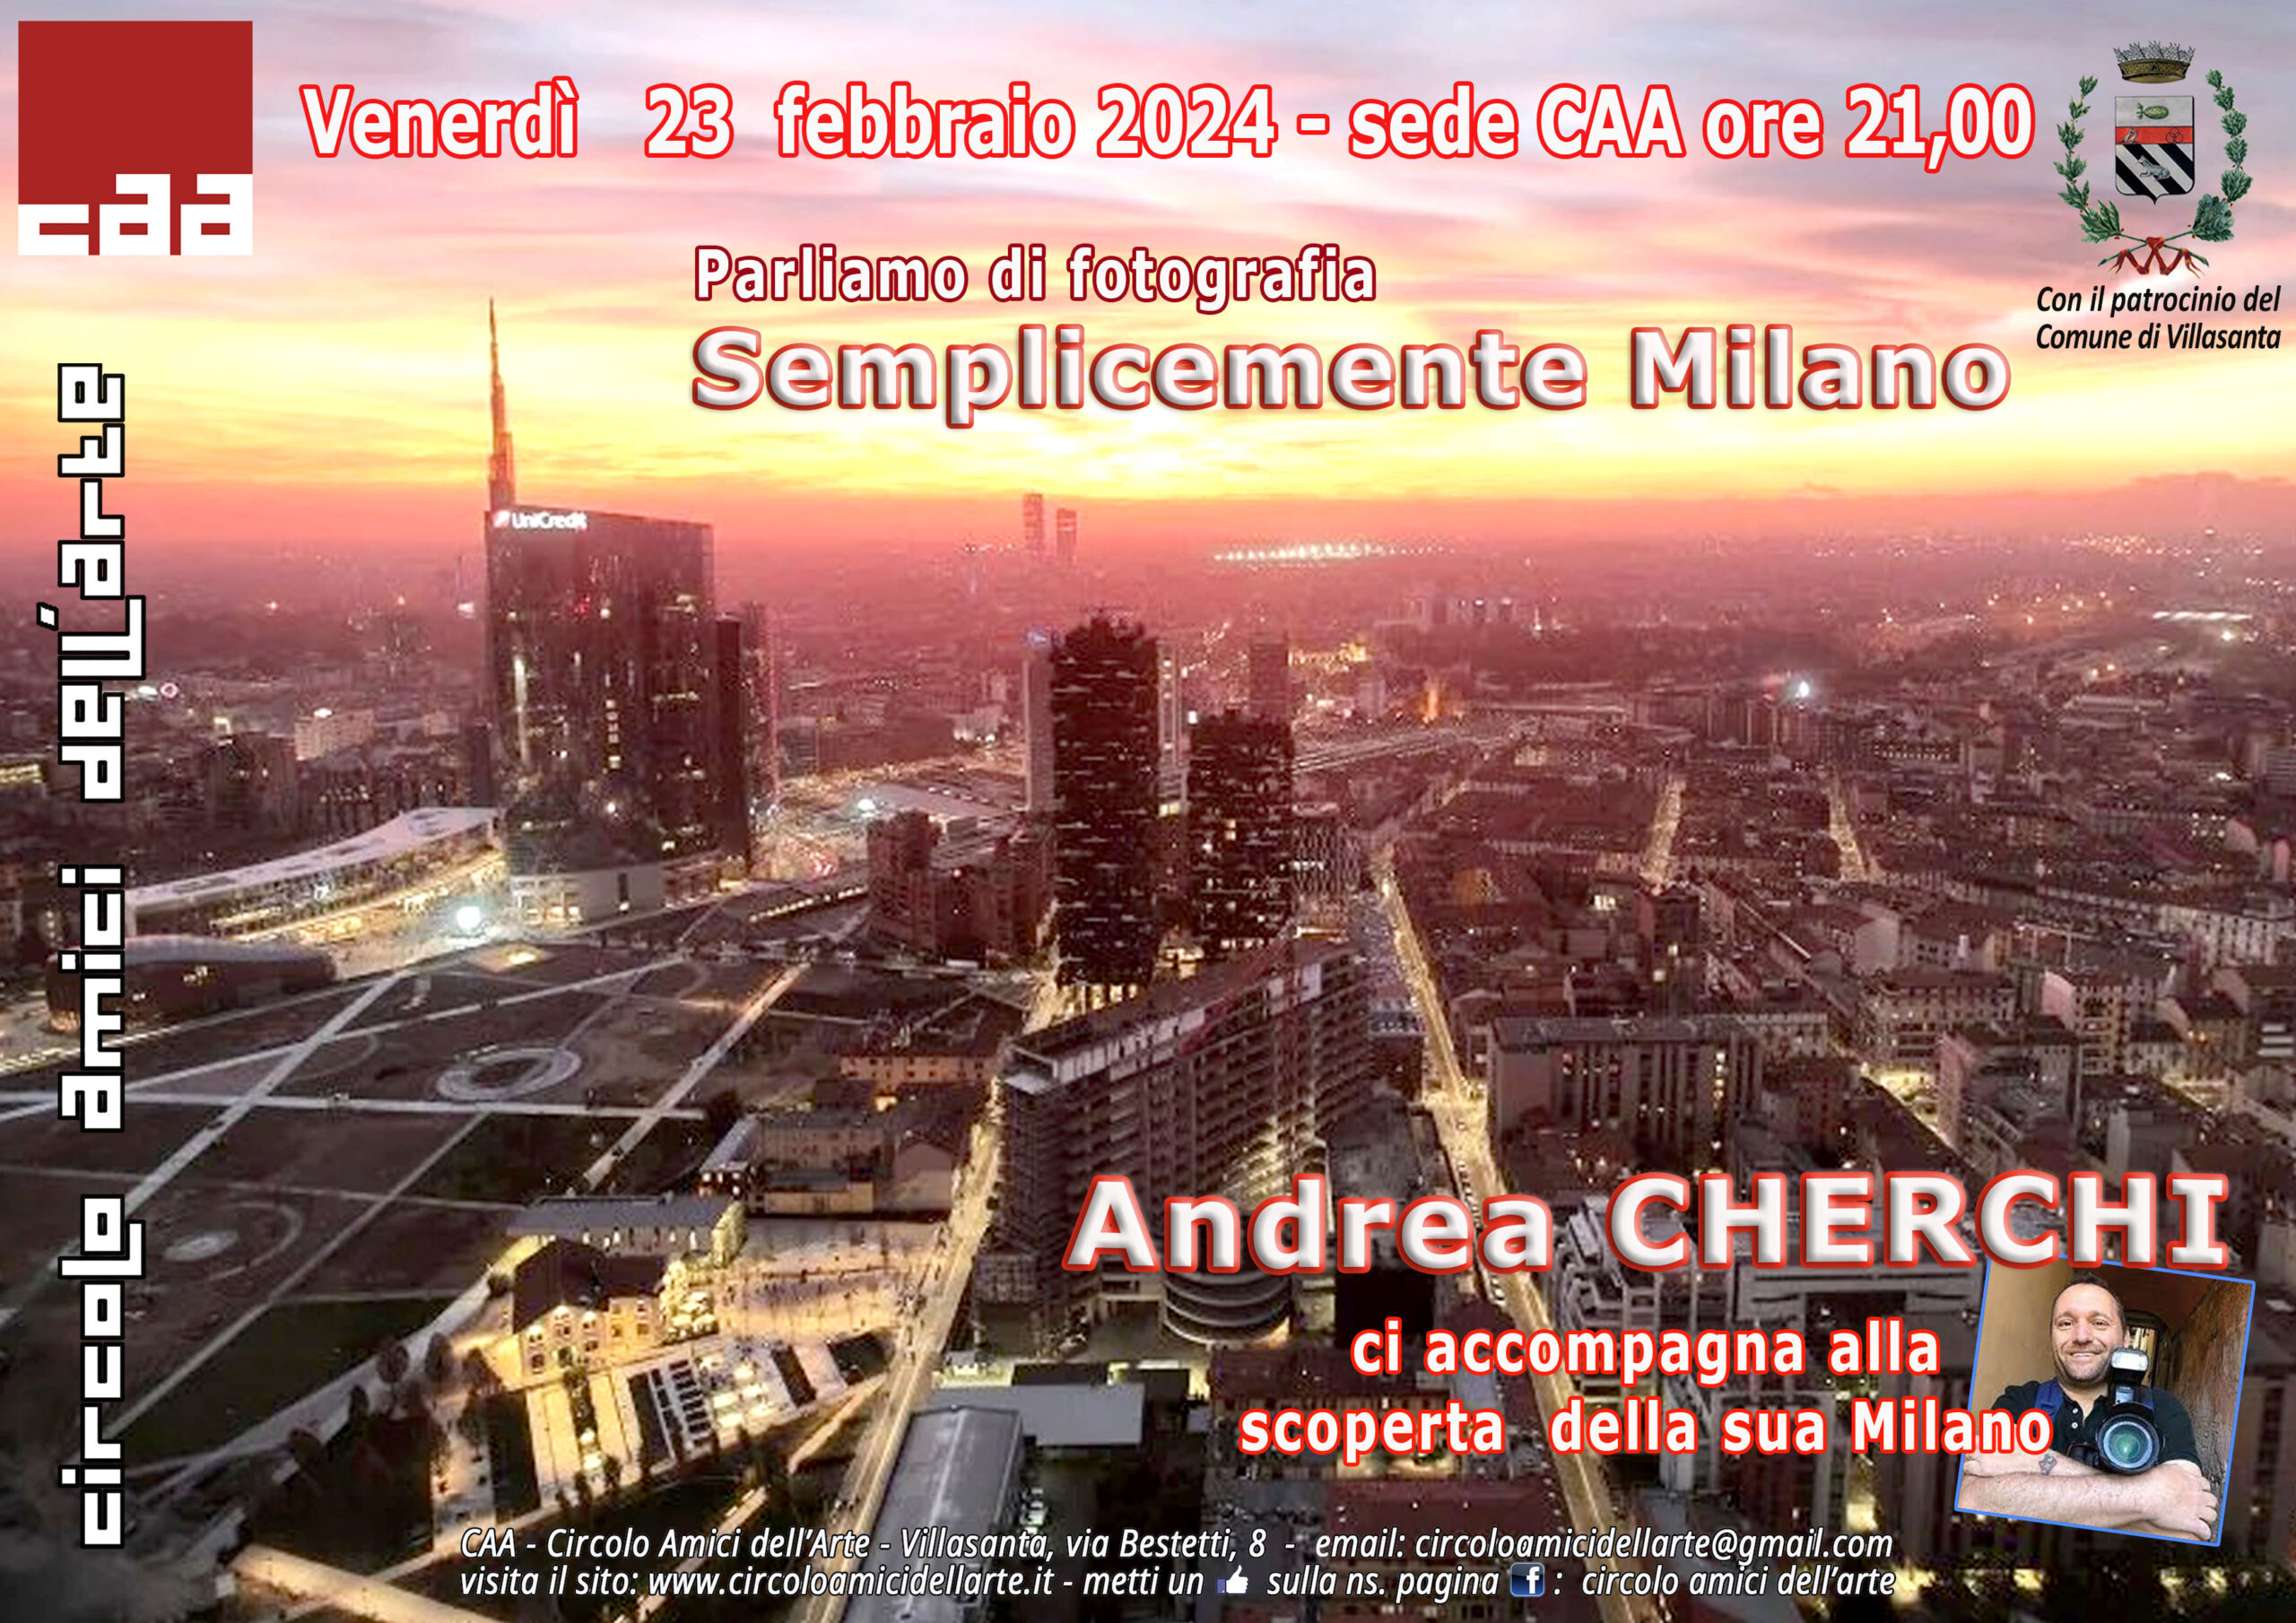 Andrea CHERCHI – Il fotografo di Milano